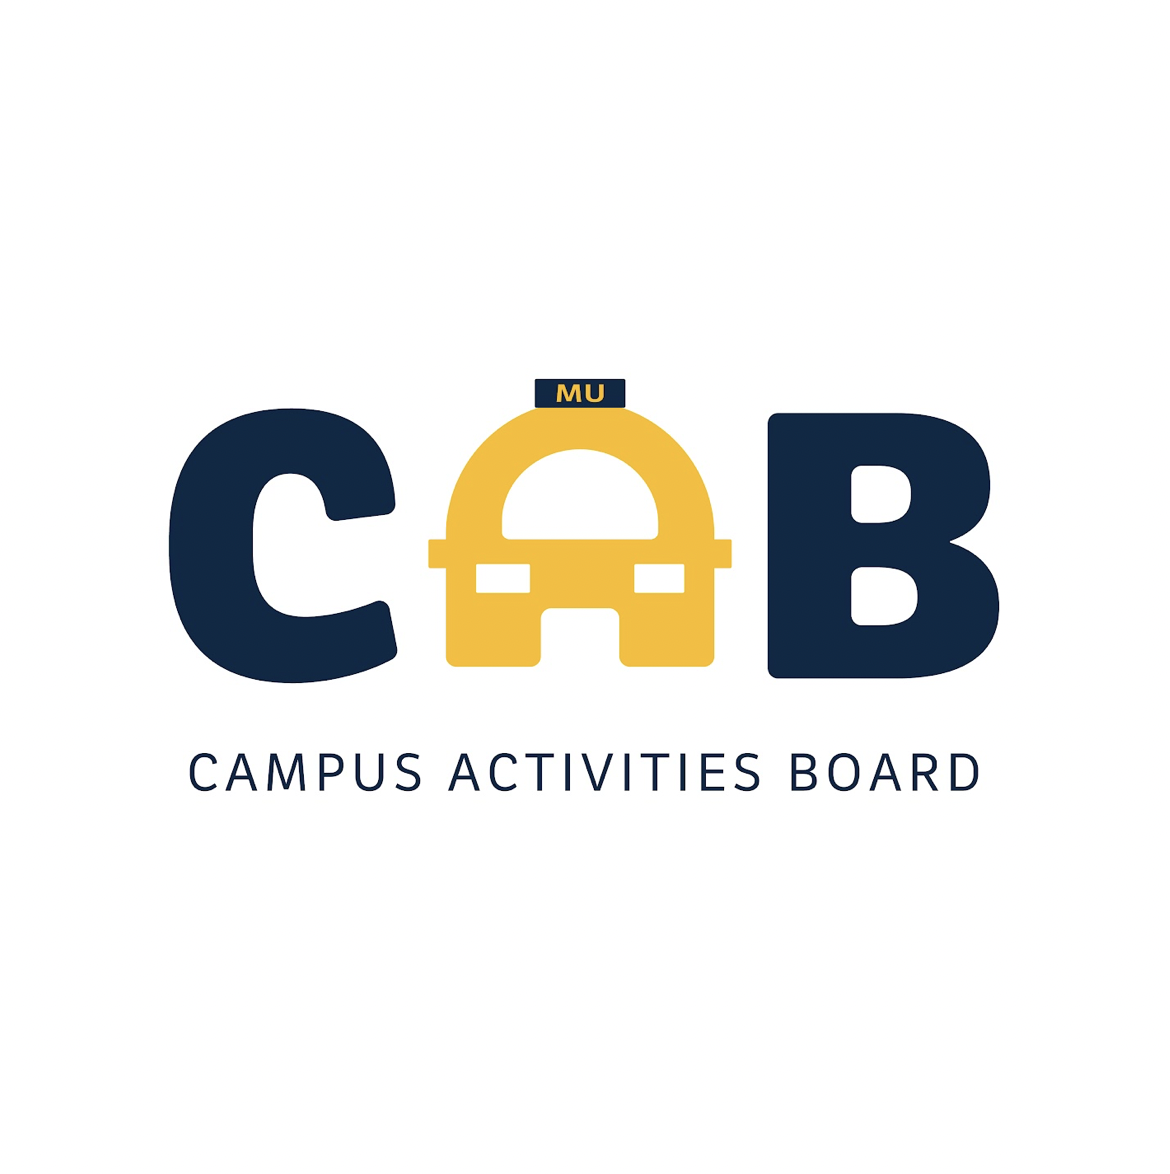 Campus Activities Board logo.